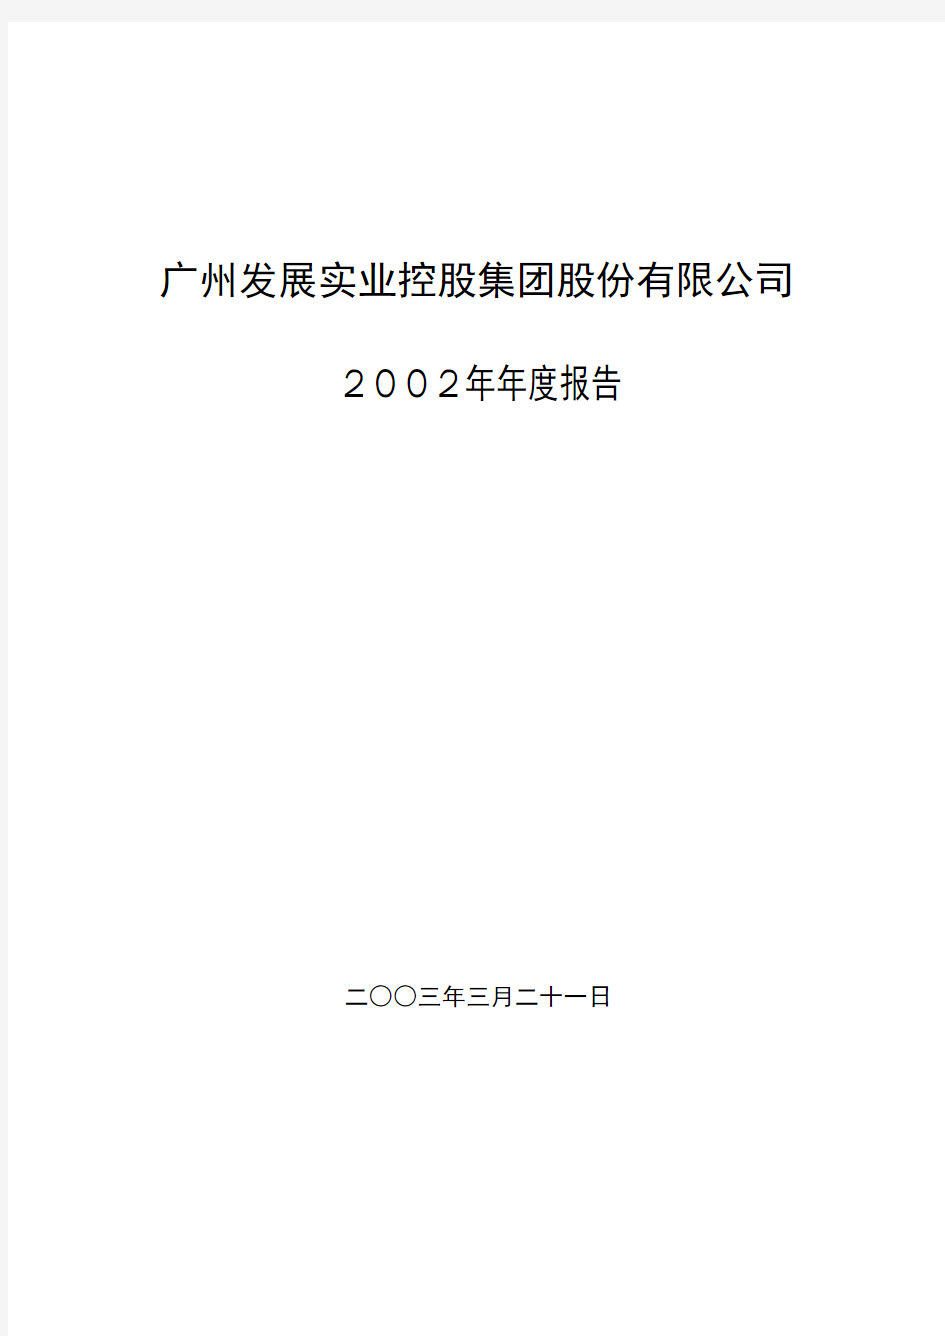 广州发展实业控股集团股份有限公司2002年年度报告